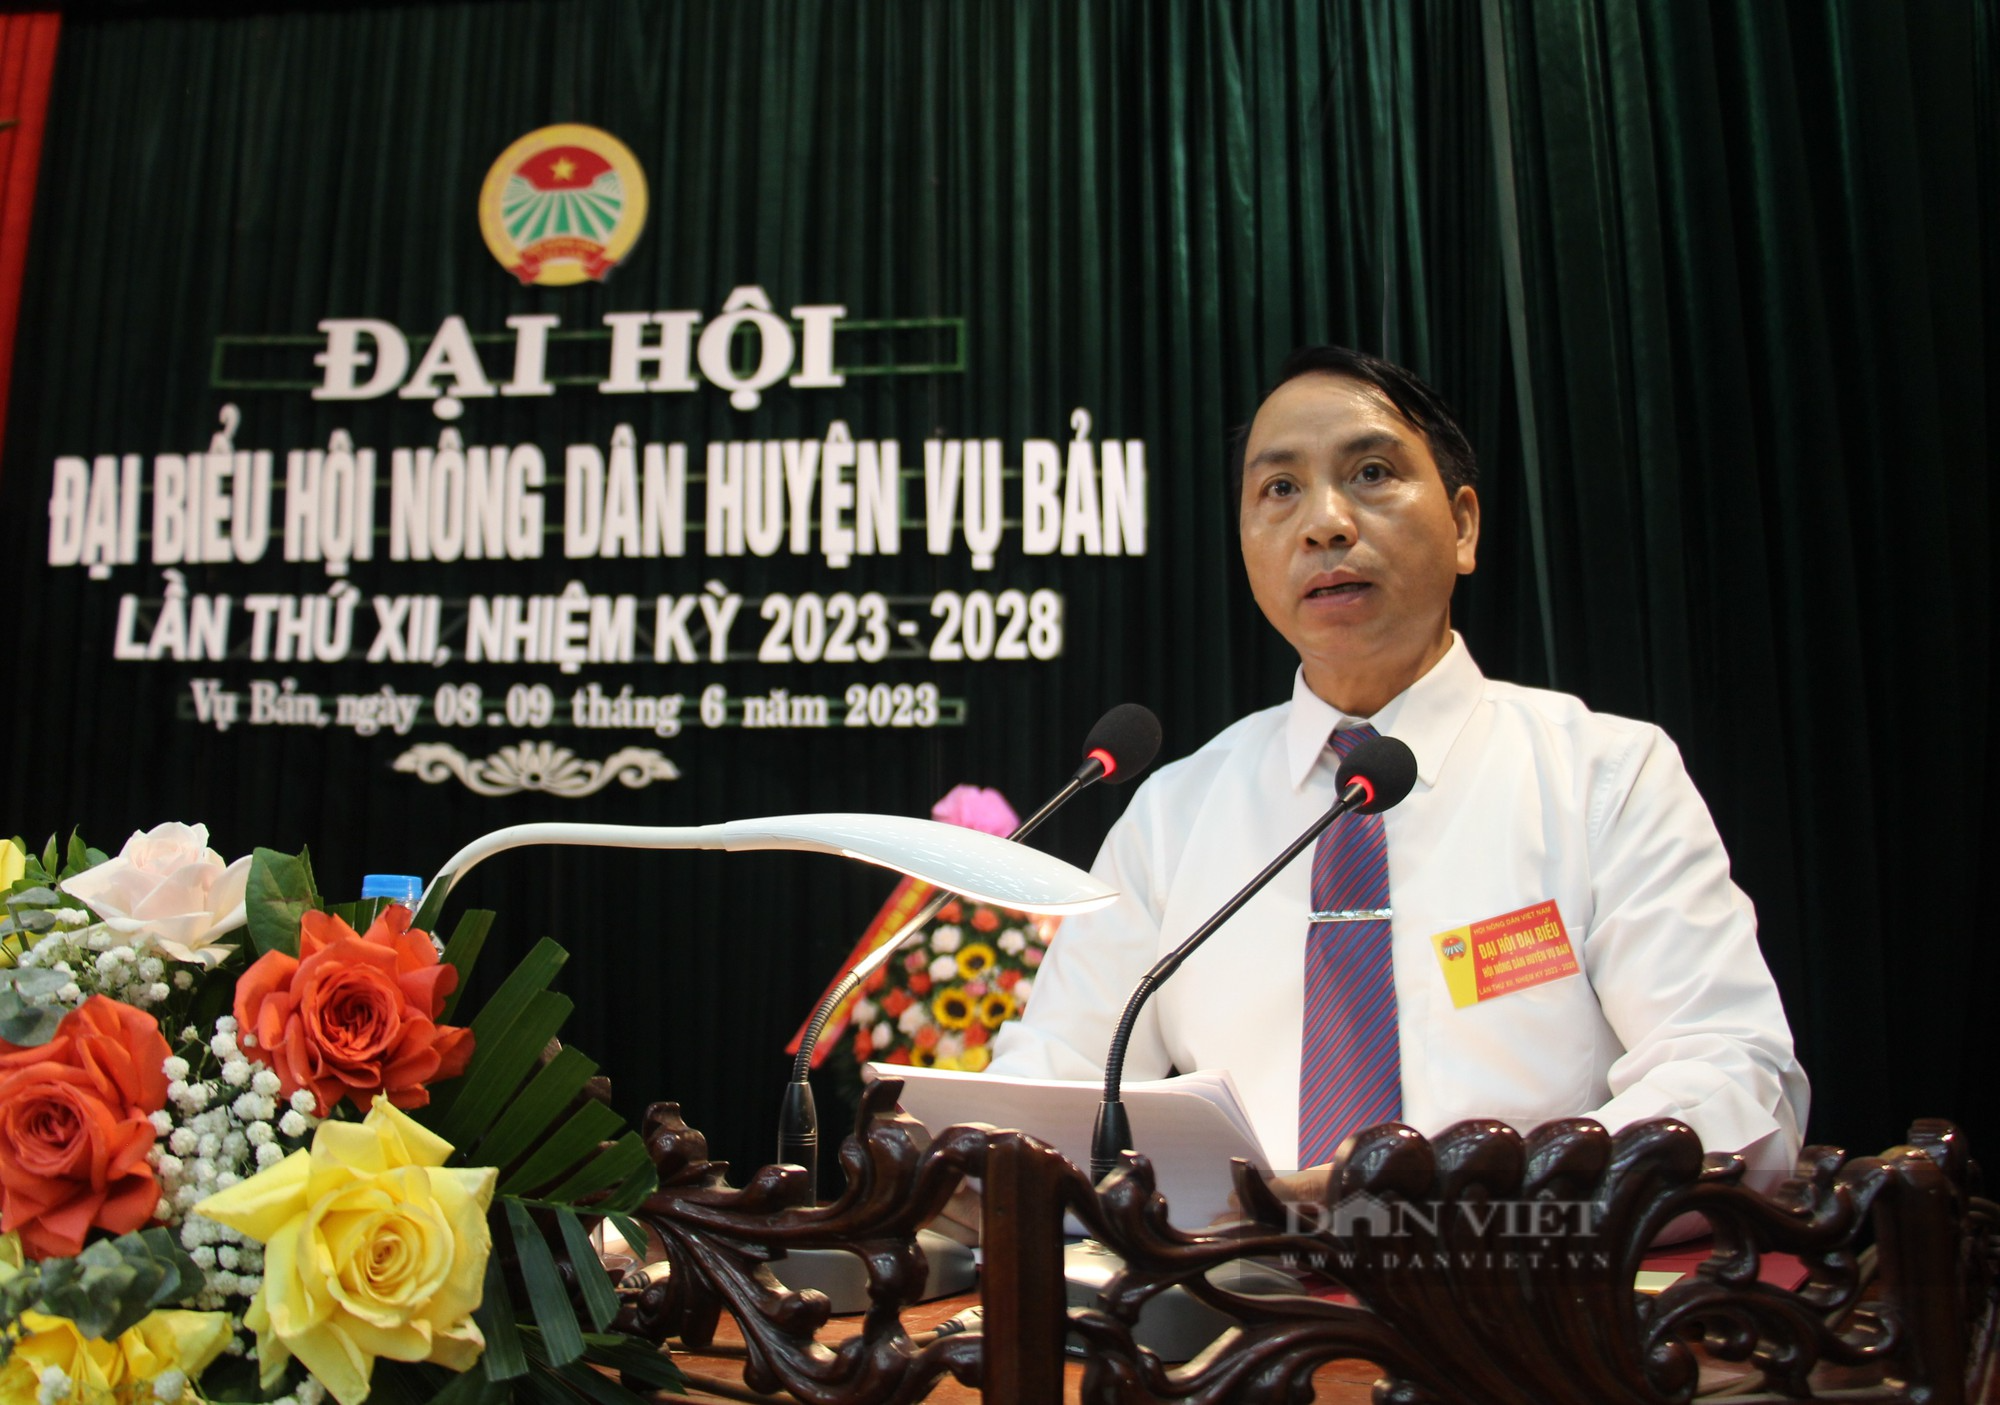 Đại hội Hội Nông dân huyện Vụ Bản, ông Hoàng Ngọc Nghị tái đắc cử chức Chủ tịch Hội Nông dân huyện - Ảnh 1.